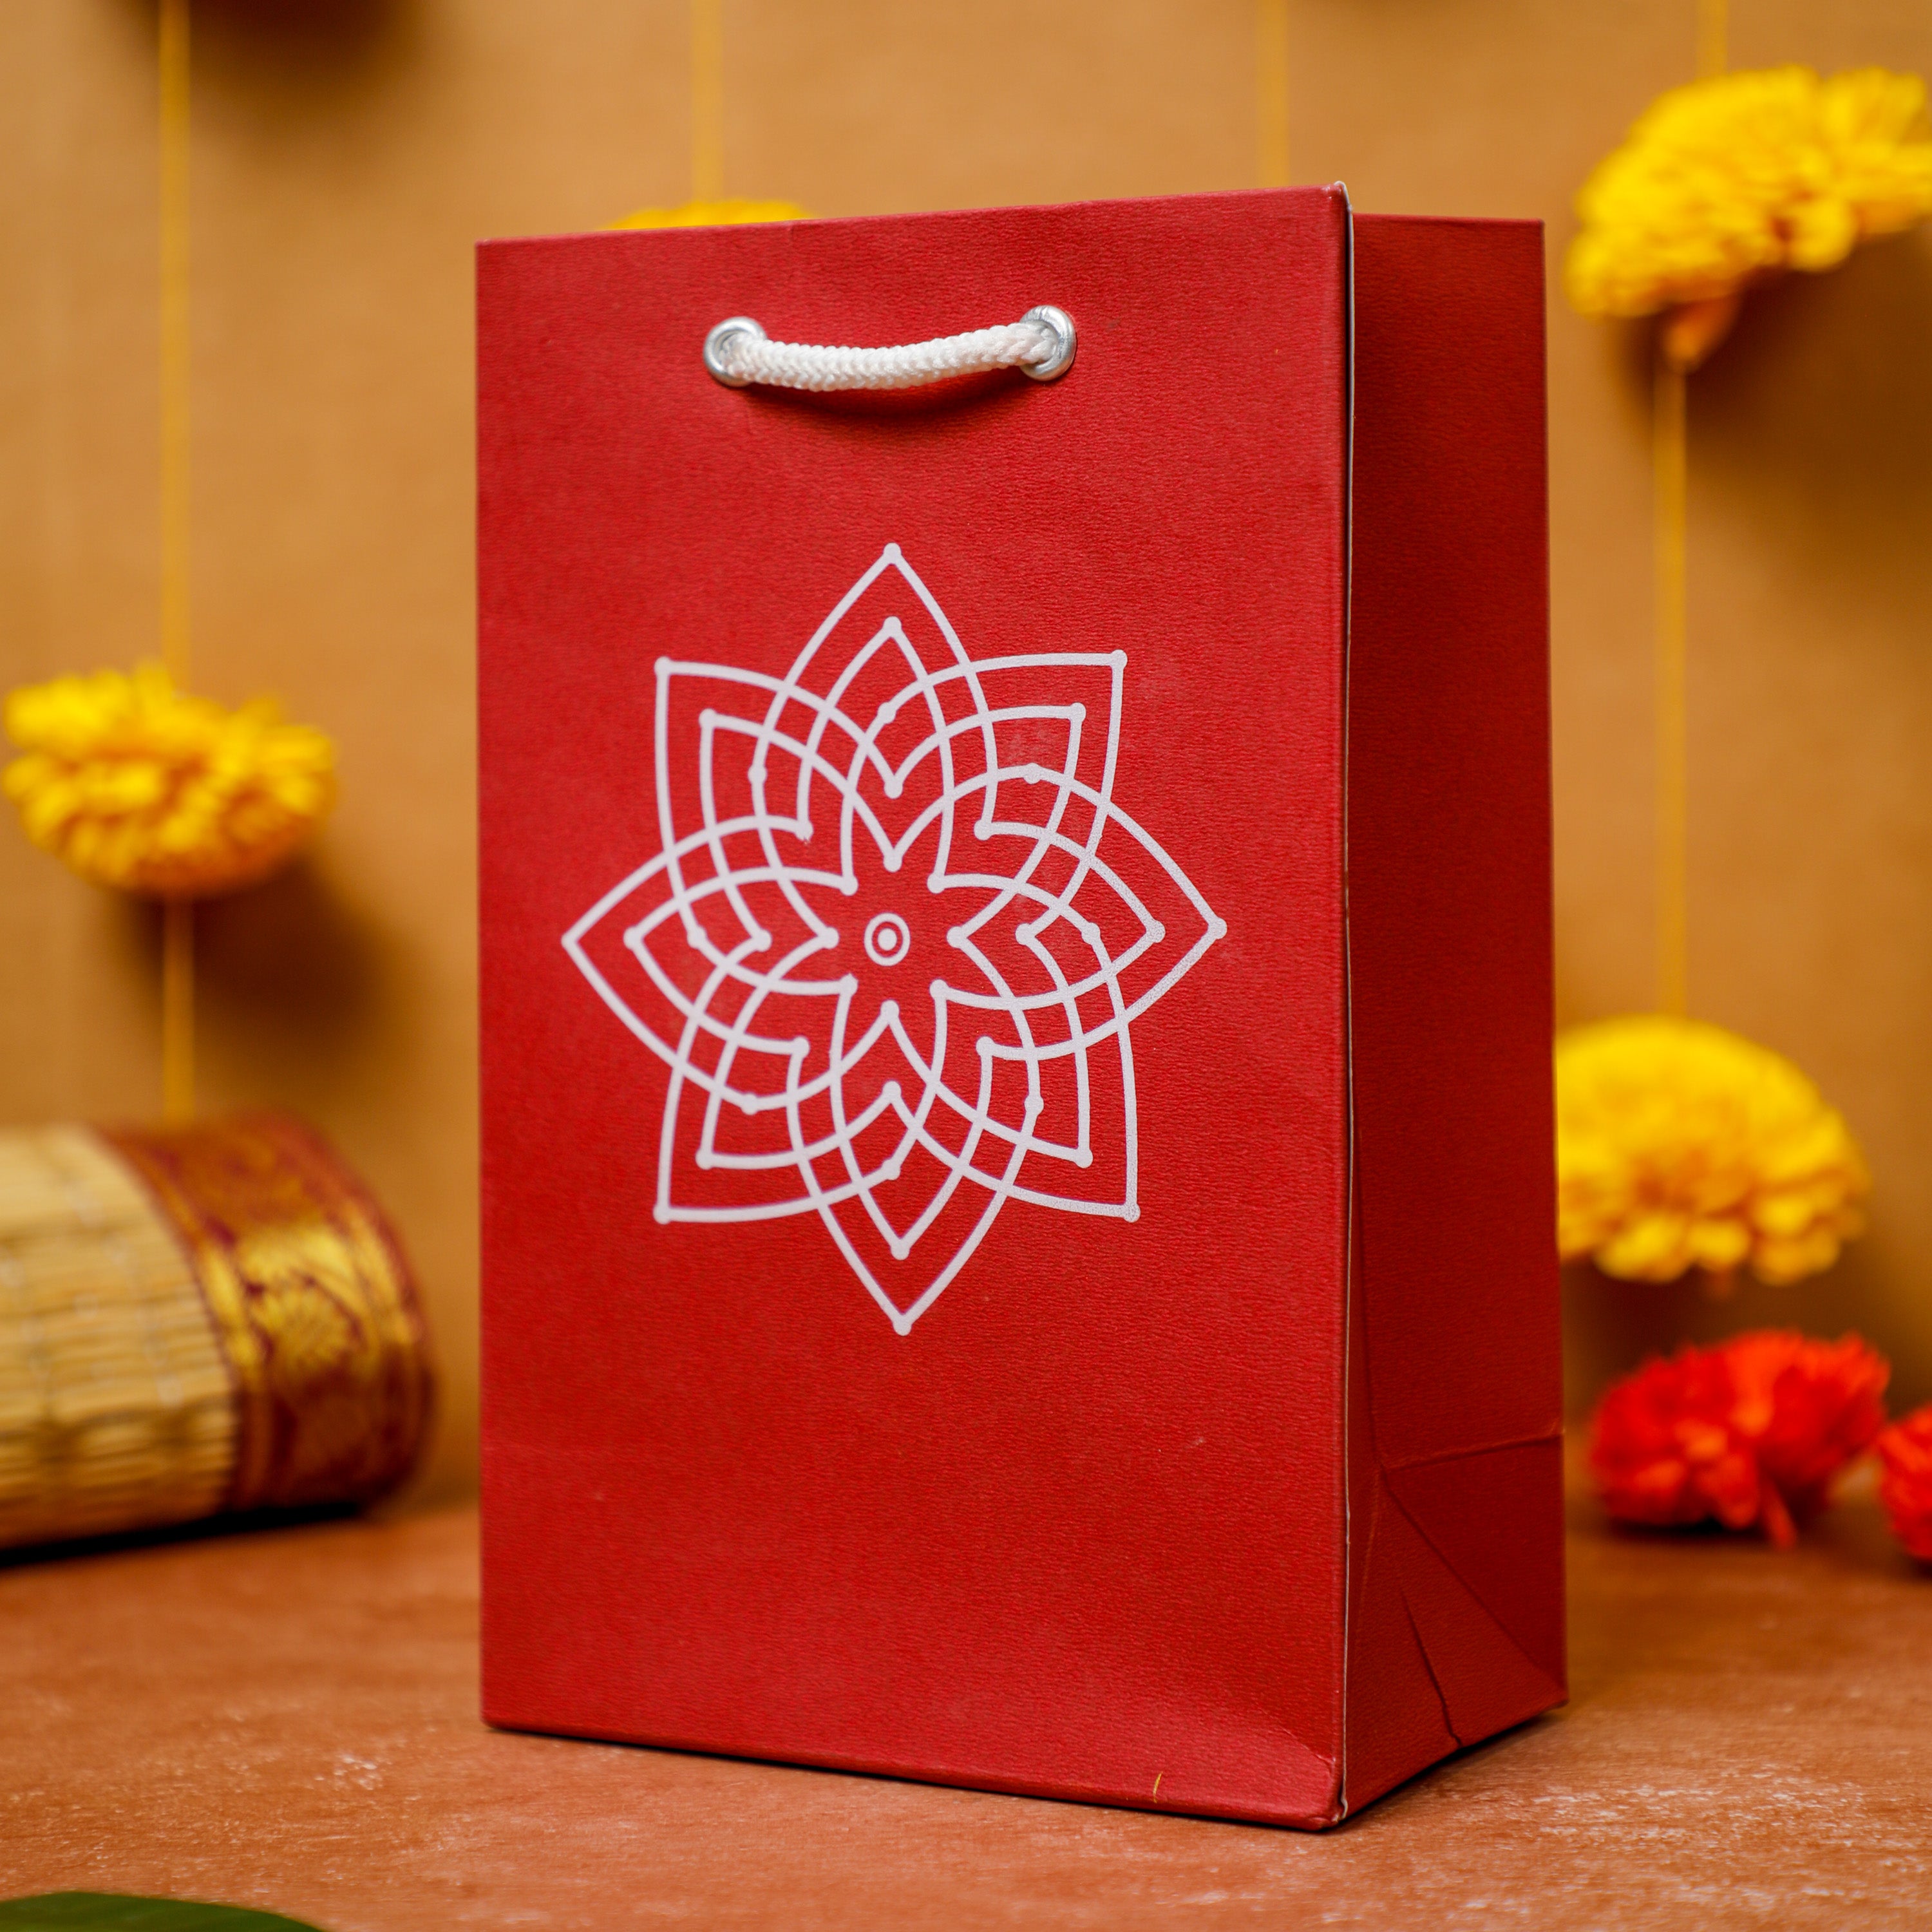 தாம்பூலத் தட்டில் என்ன பொருட்கள் வைக்க வேண்டும் ||Varalakshmi pooja return  gift ideas - YouTube